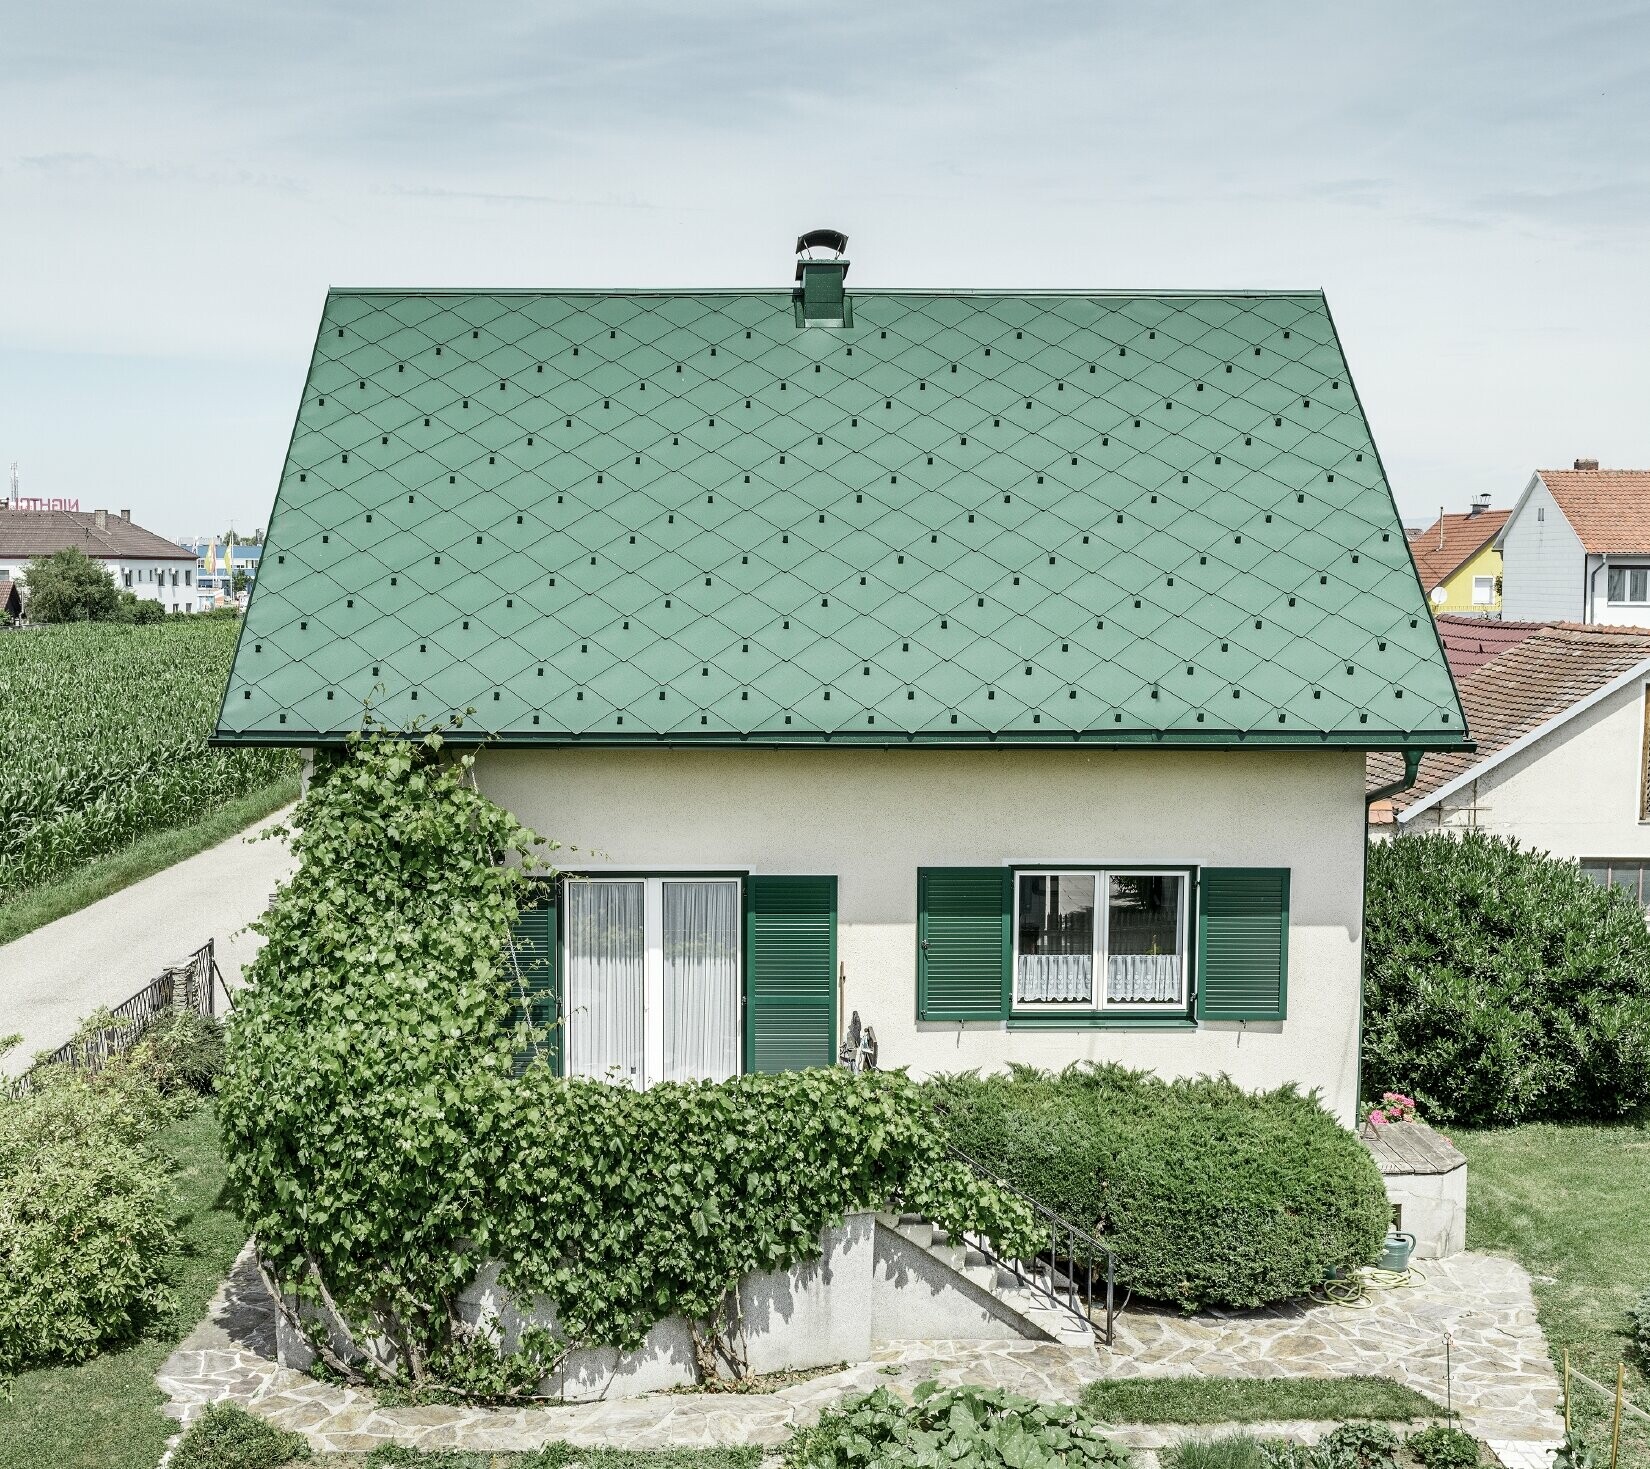 Klasična enodružinska hiša z dvokapno streho s strešno kritino iz aluminija PREFA v mahovo zeleni barvi z zelenimi polkni. Streha je bila izdelana s strešnimi rombi 44 × 44 PREFA v barvi P.10 mahovo zelena.